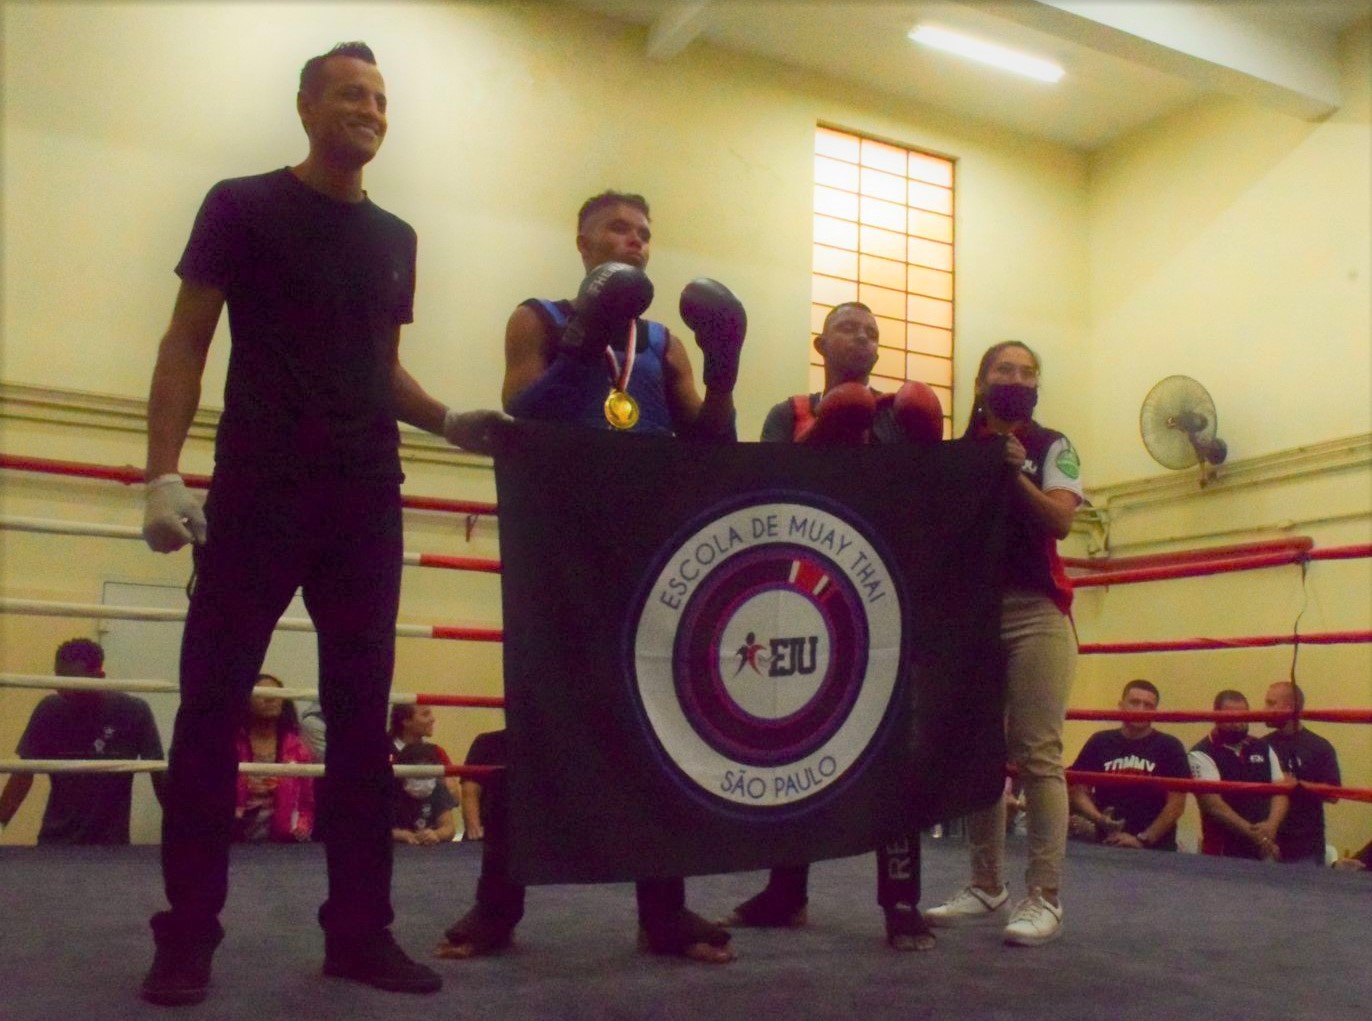 Aconteceu o 1º Campeonato Estadual de Muay Thai da FJU, no Brás